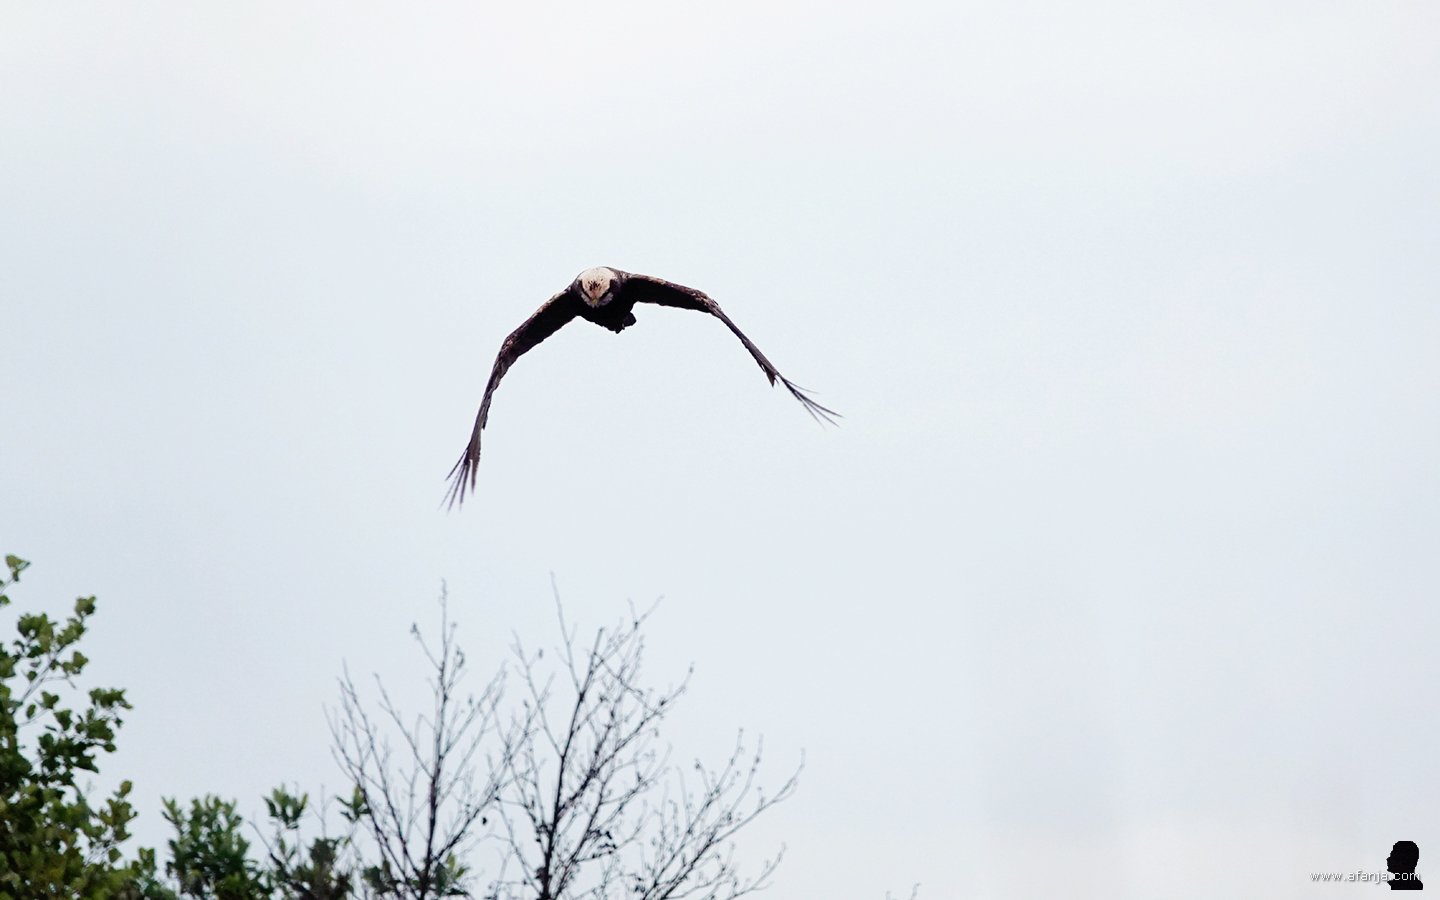 een bruine kiekendief nadert de vogelkijkhut van waaruit de foto is gemaakt